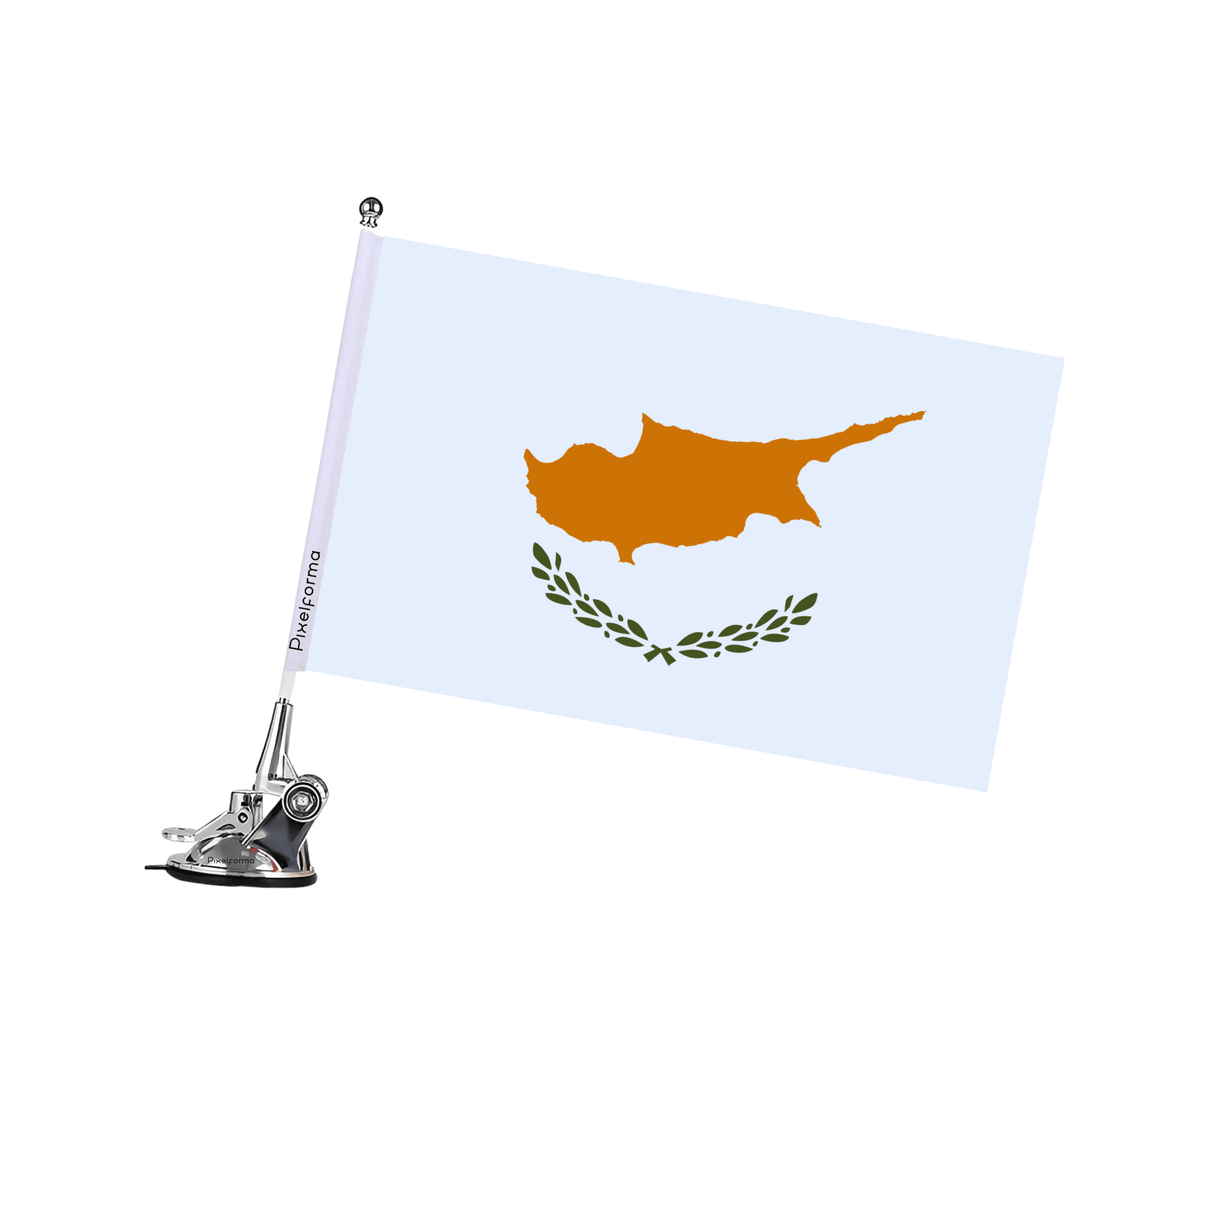 Mât à Ventouse Drapeau de Chypre - Pixelforma 